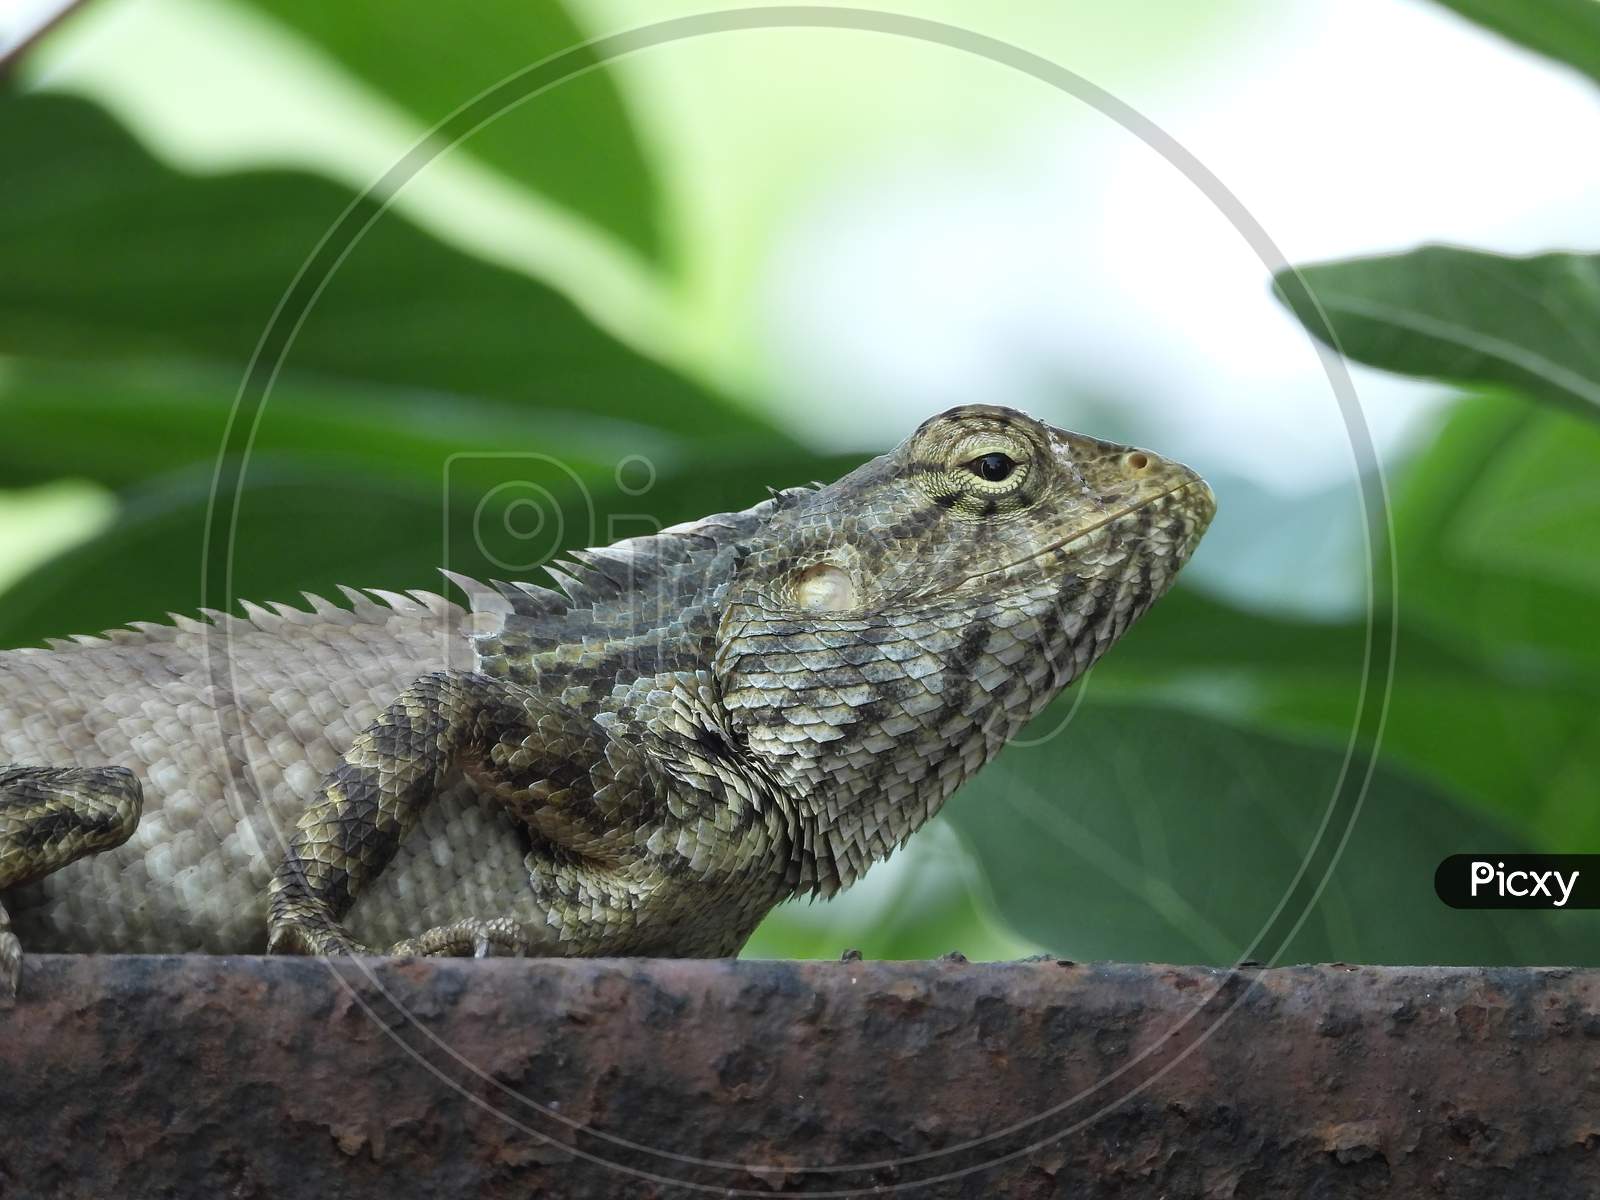 Oriental garden lizard in natural habitat